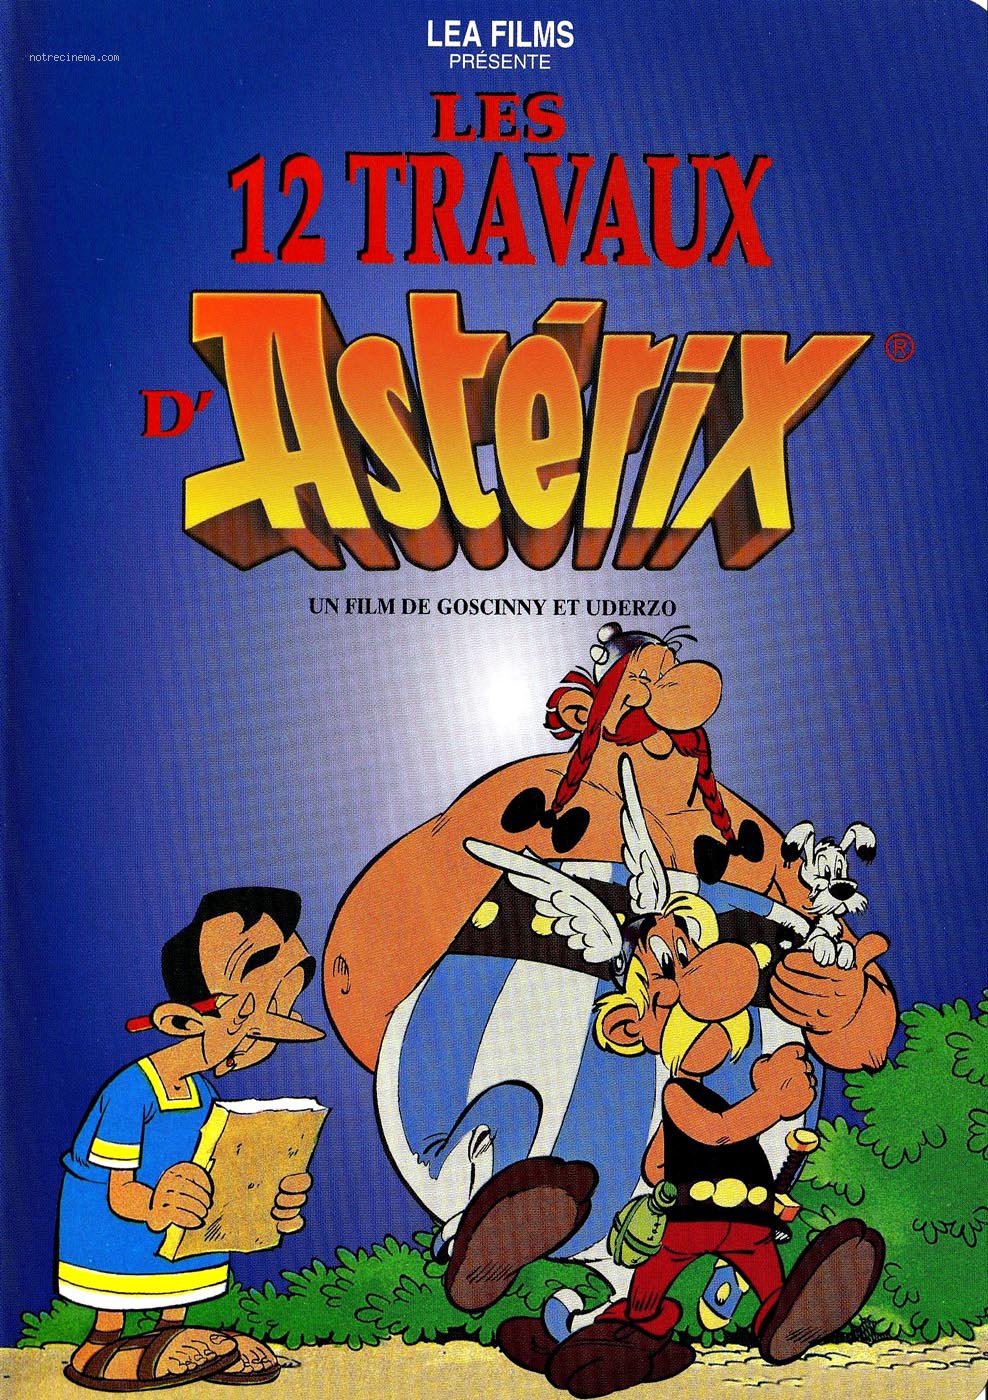 Les 12 travaux d'Astérix / The Twelve Tasks of Asterix